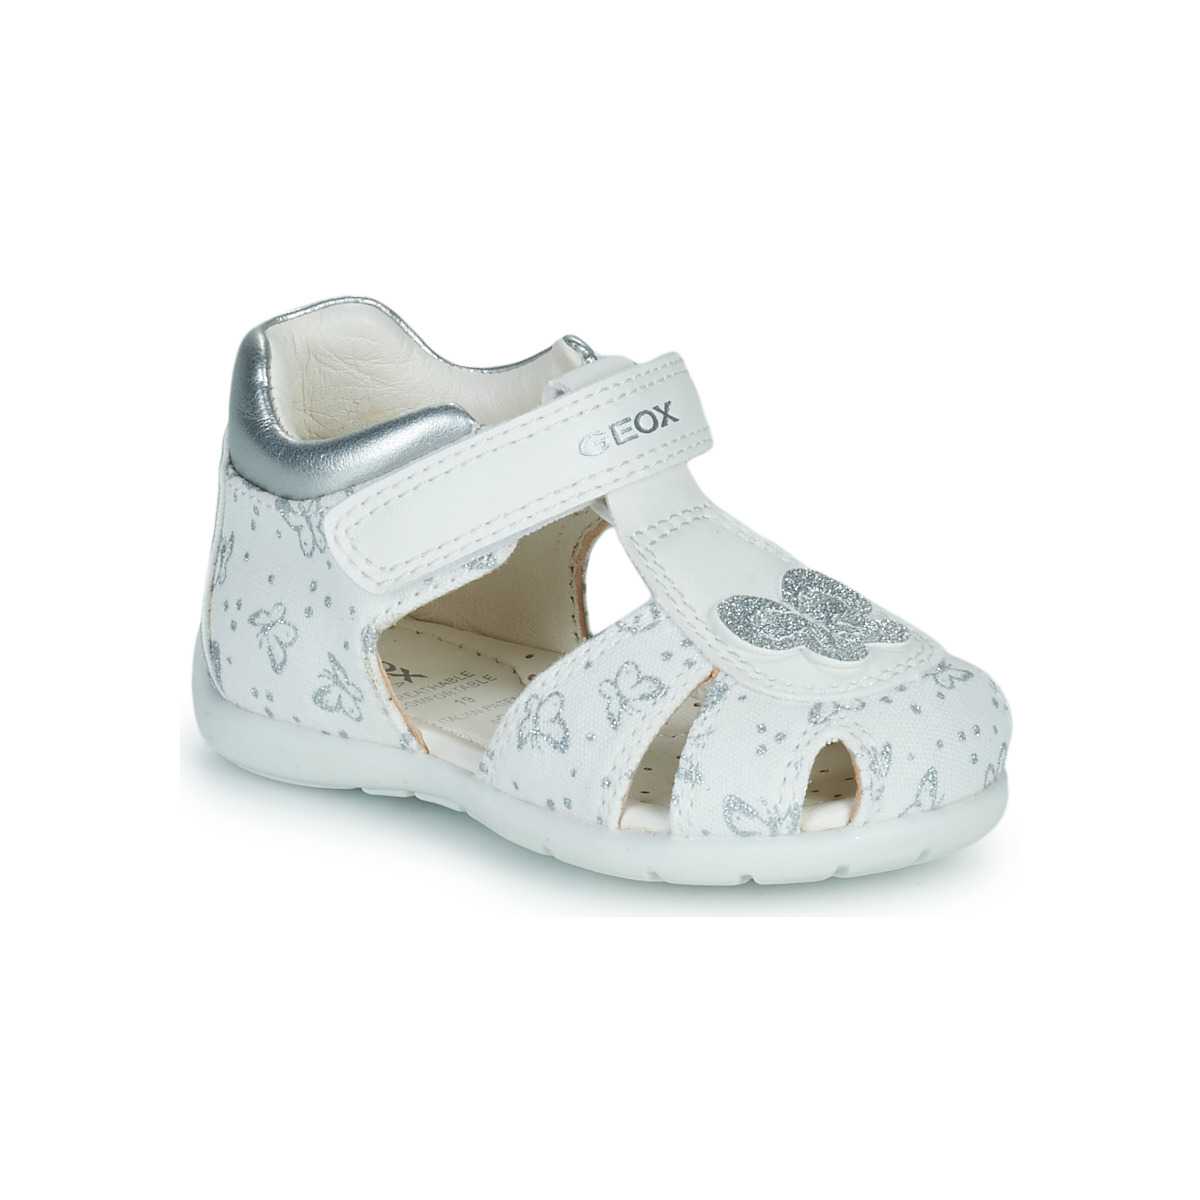 Chaussures Fille Sandales et Nu-pieds Geox B ELTHAN GIRL C Blanc / Argenté